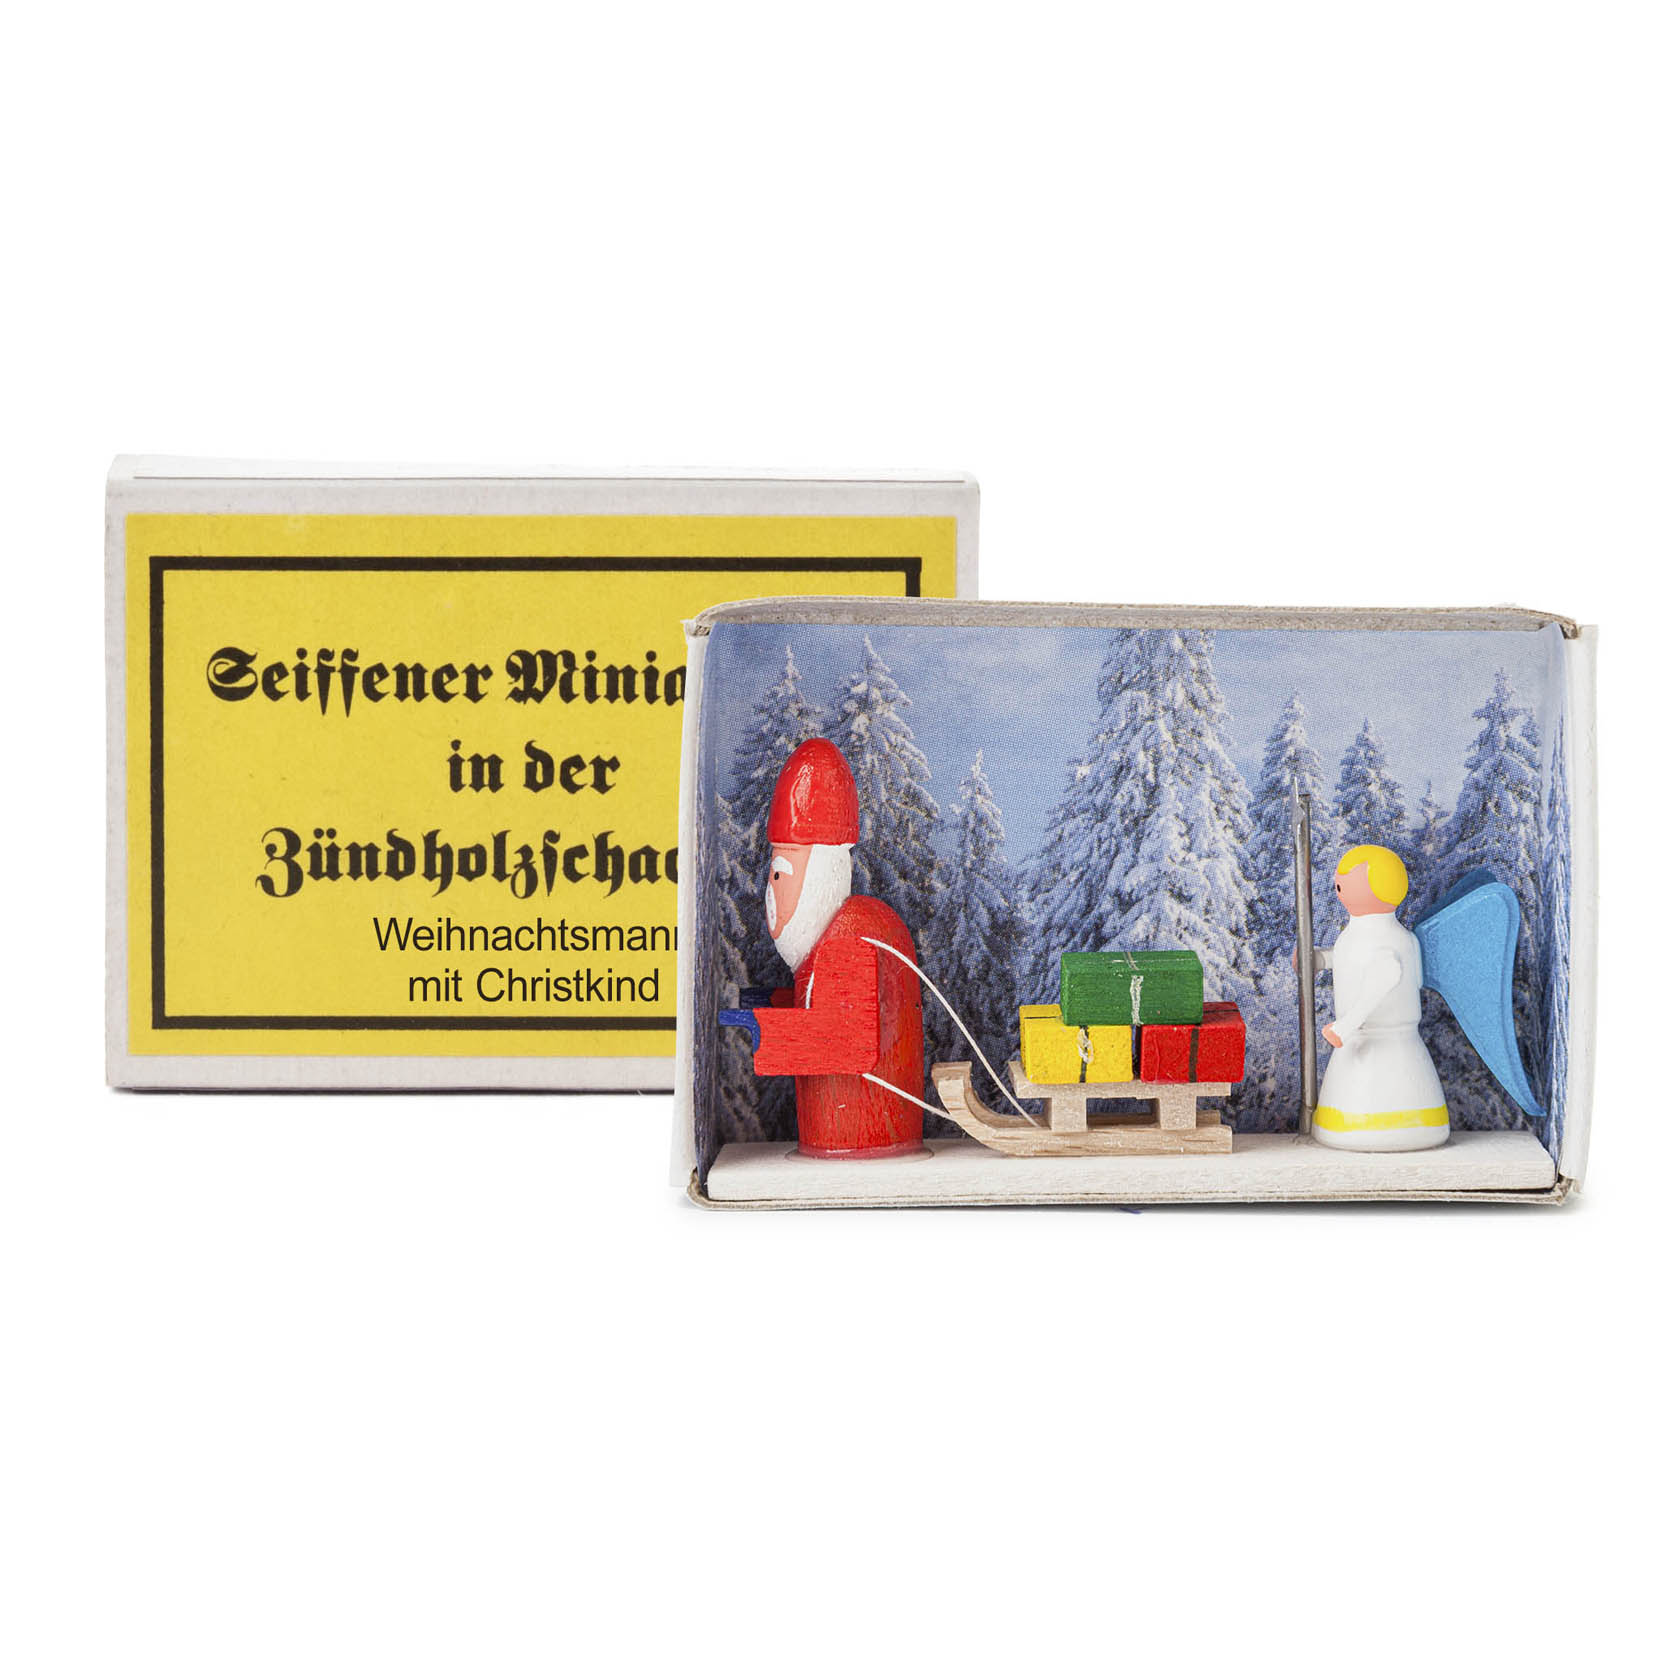 Zündholzschachtel Weihnachtsmann mit Christkind im Dregeno Online Shop günstig kaufen